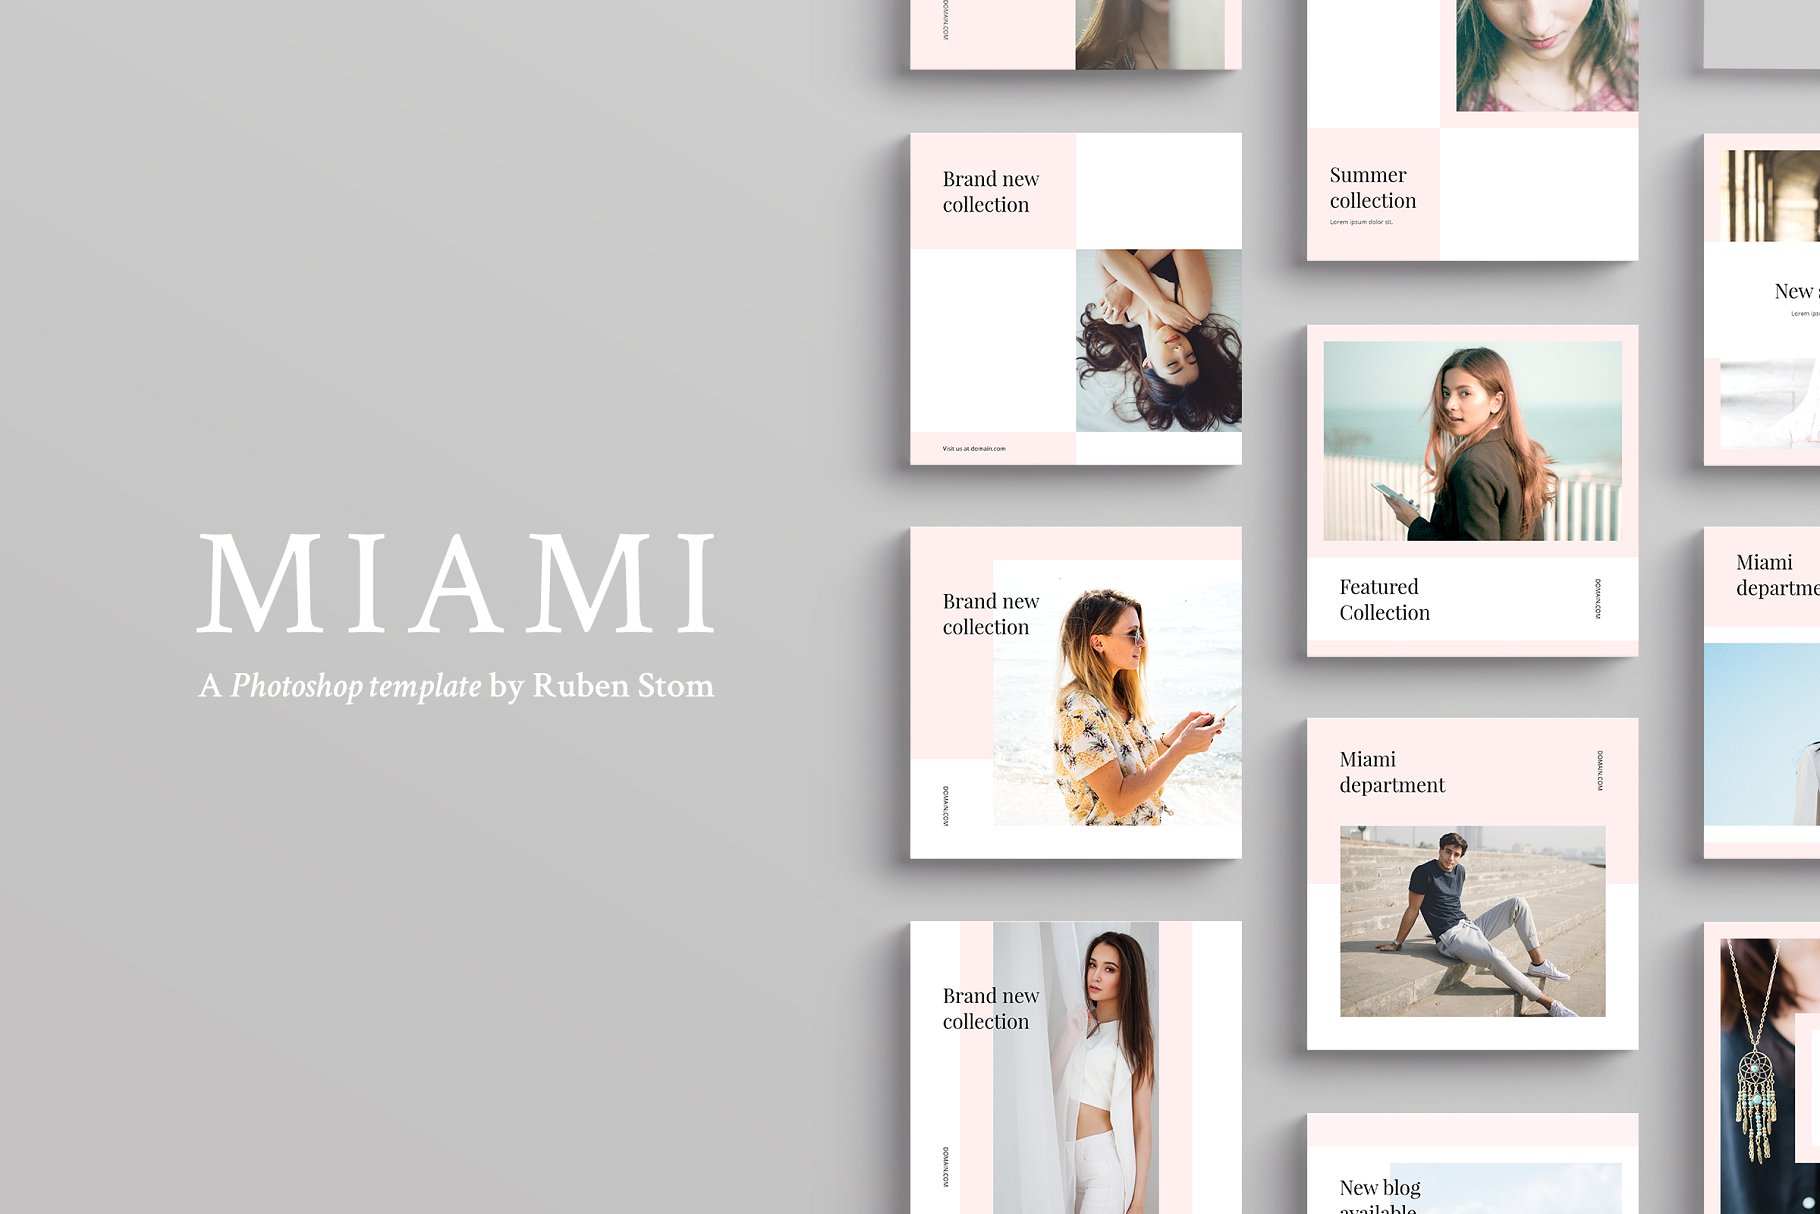 适合多个社交媒体平台的插图配图设计模板第一素材精选 Miami Social Media Templates插图